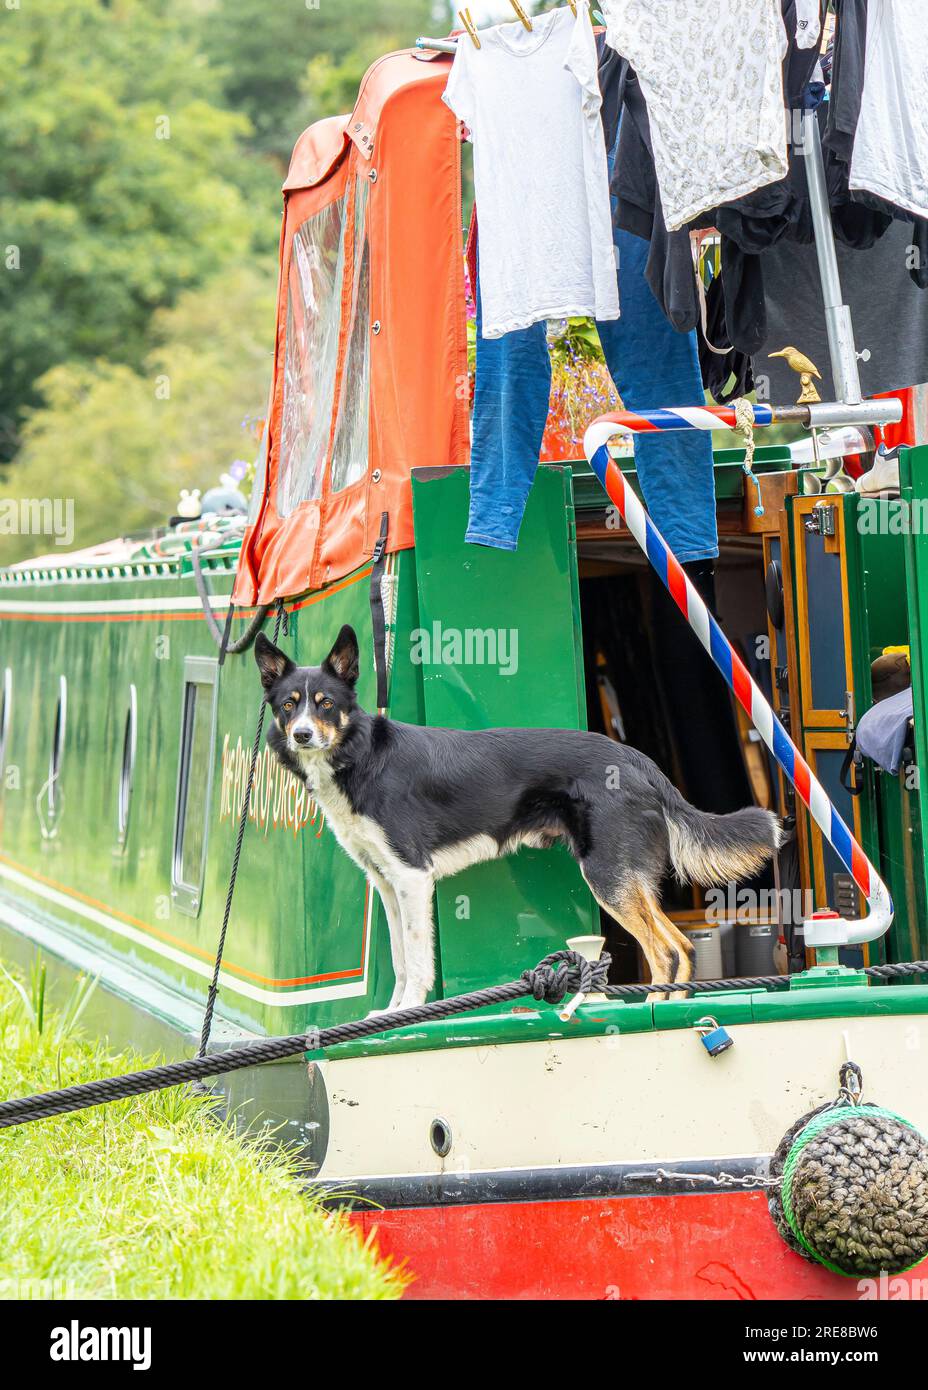 Nahaufnahme eines Hundes, der hinten auf einem vertätigten Kanalboot steht, mit Wäscherei, die zum Trocknen in einem temporären Wäscheautomaten aufgehängt wird. Stockfoto